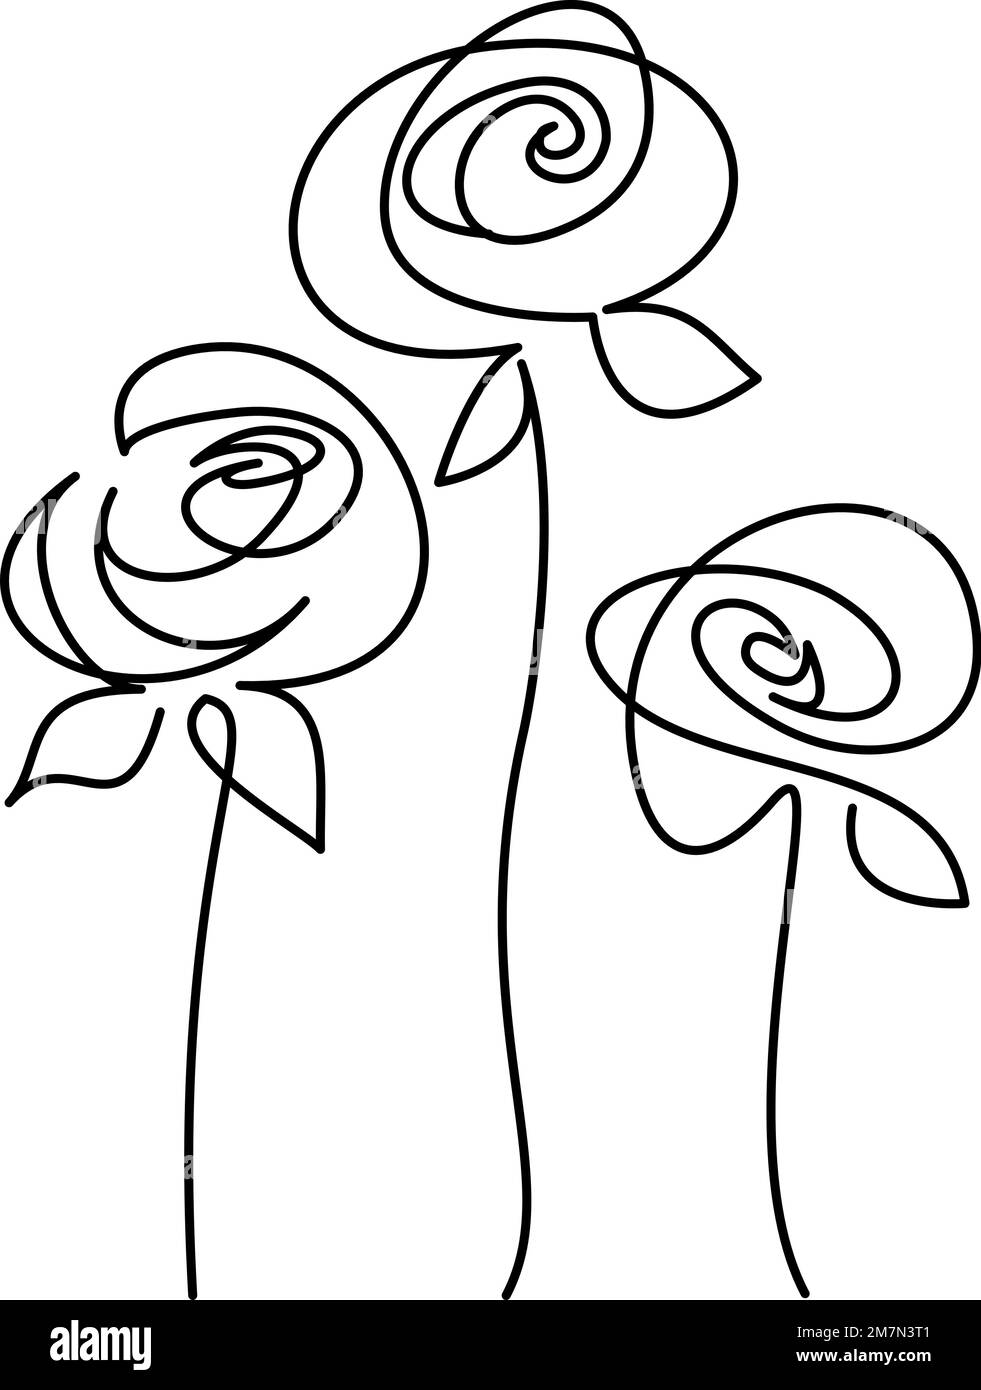 Drei abstrakte Rosenblumen. Durchgehende einzeilige Zeichnung, Vektordarstellung. Stock Vektor